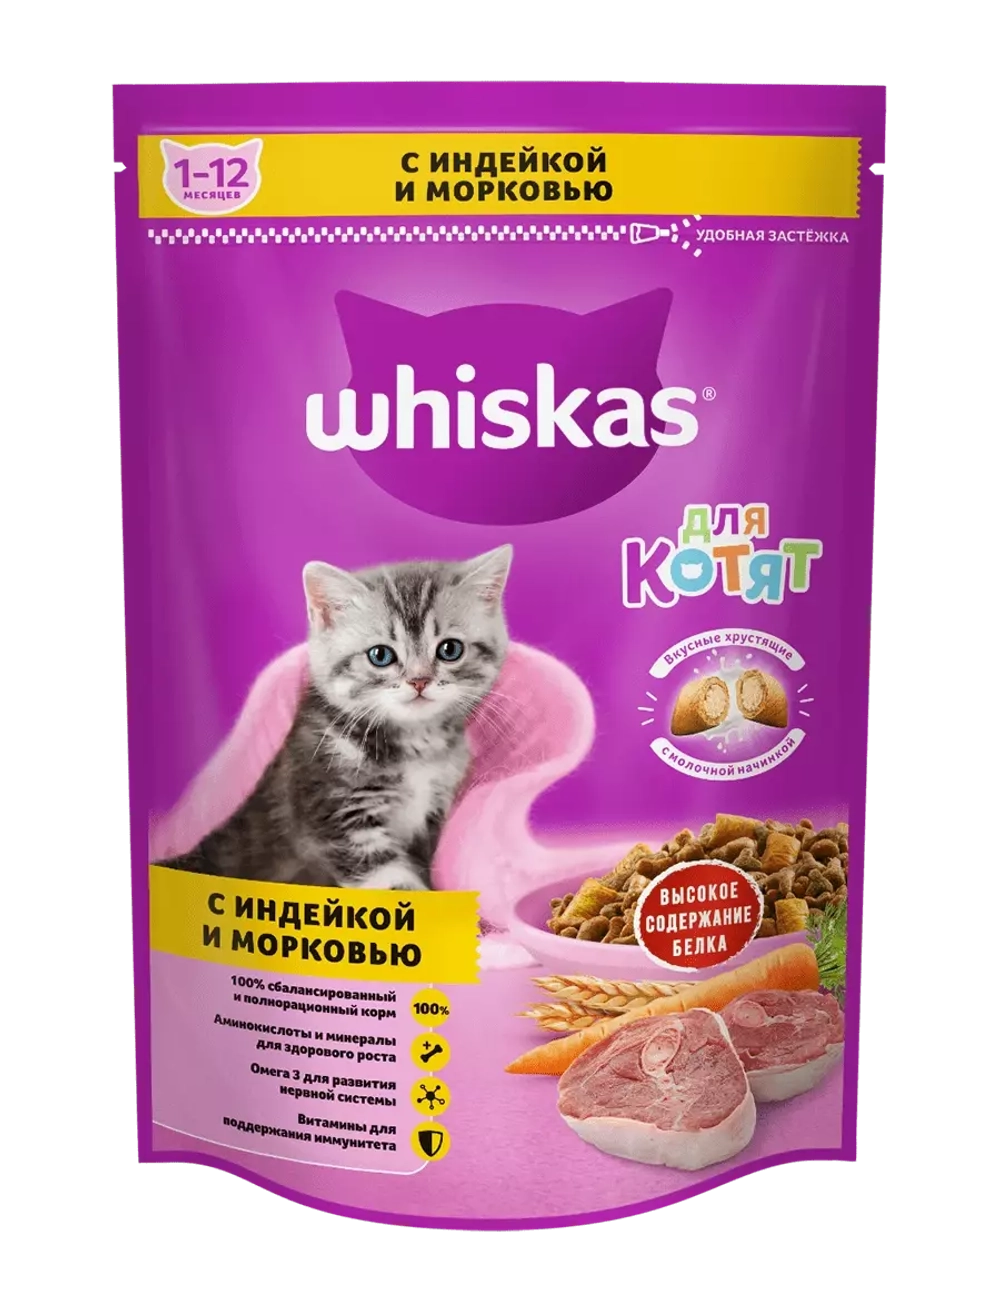 Whiskas корм для котят с индейкой и морковью, подушечки с молочной начинкой